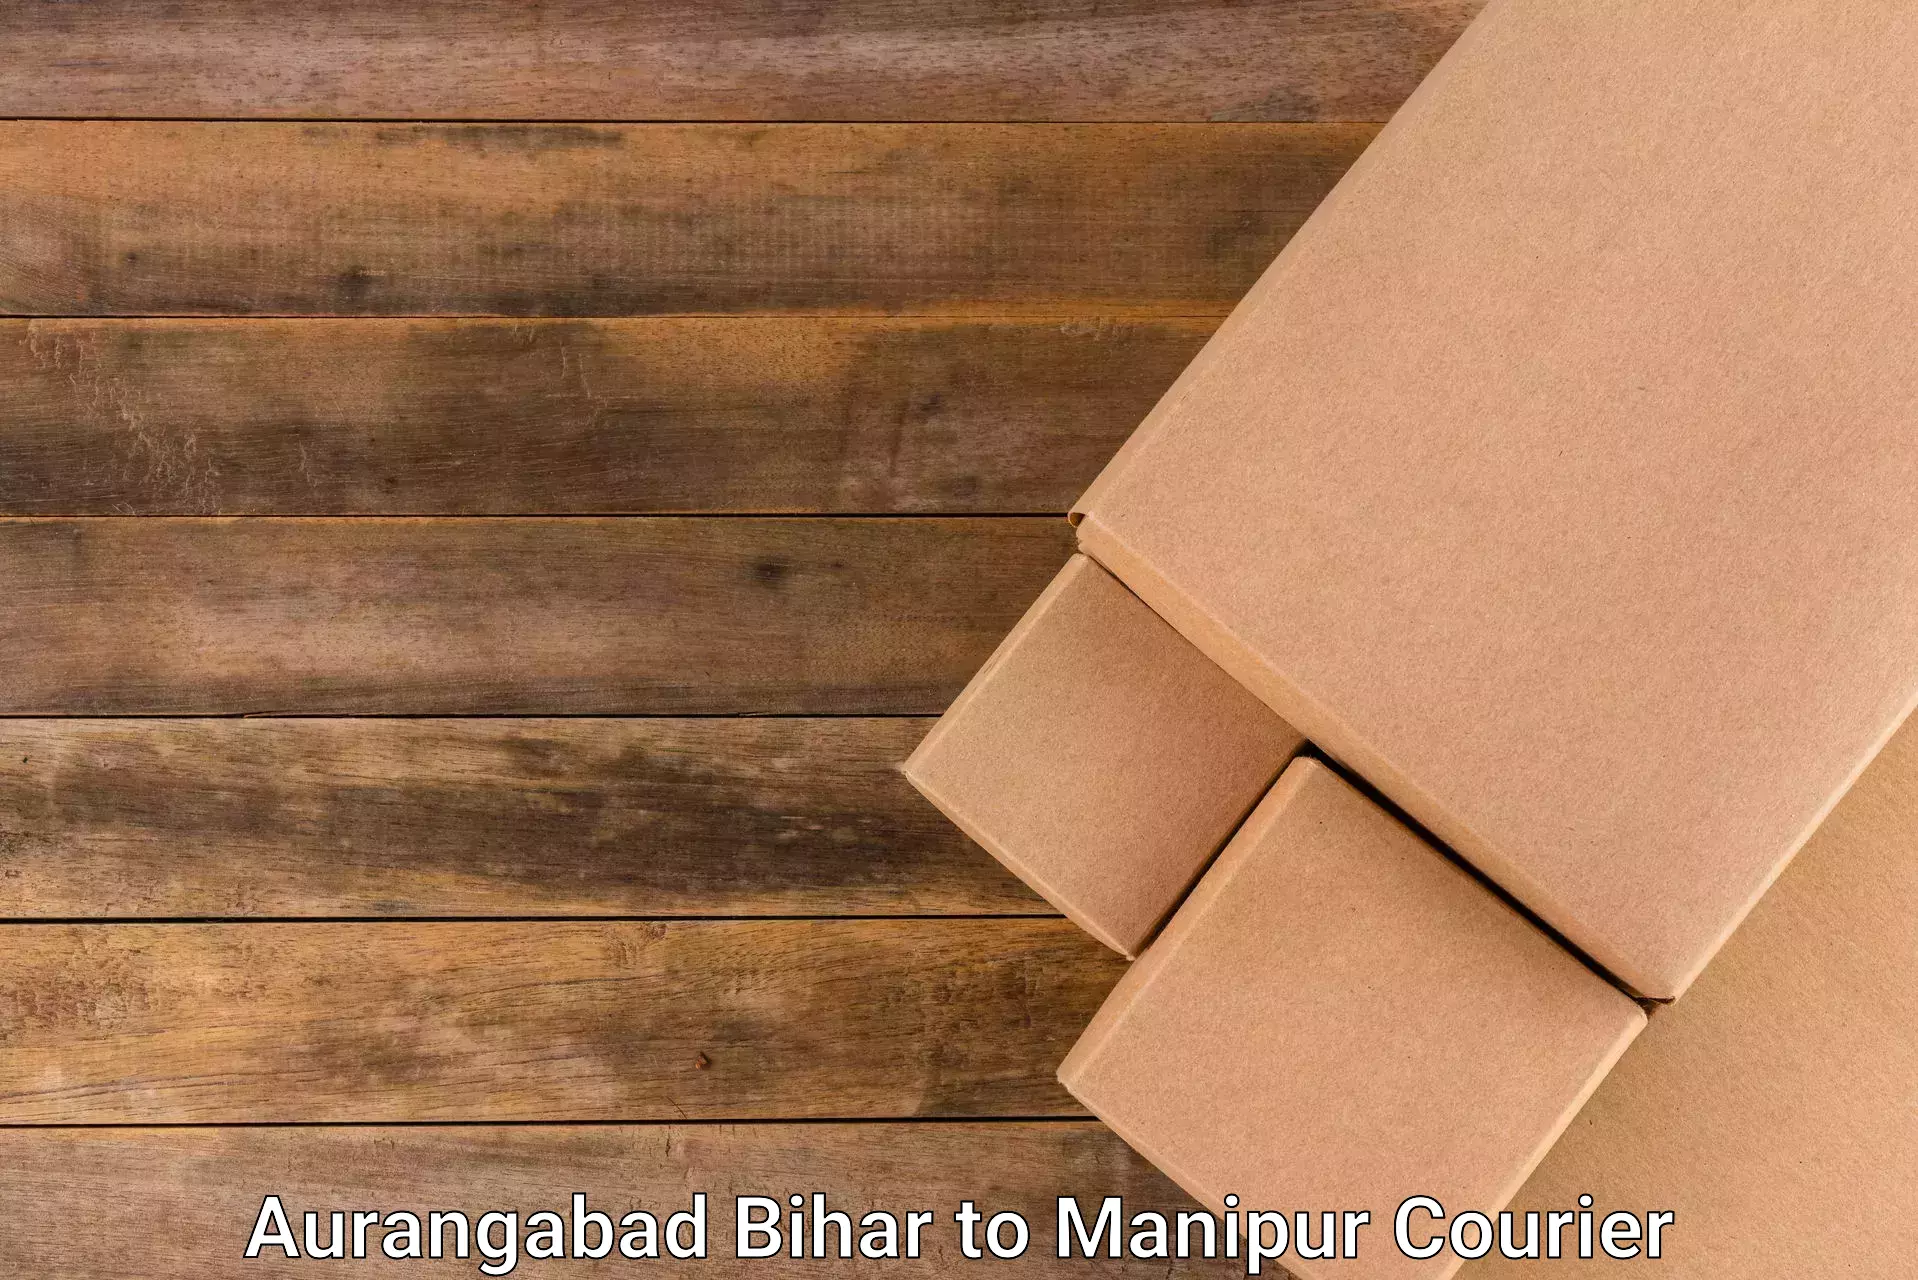 Reliable parcel services Aurangabad Bihar to Tadubi